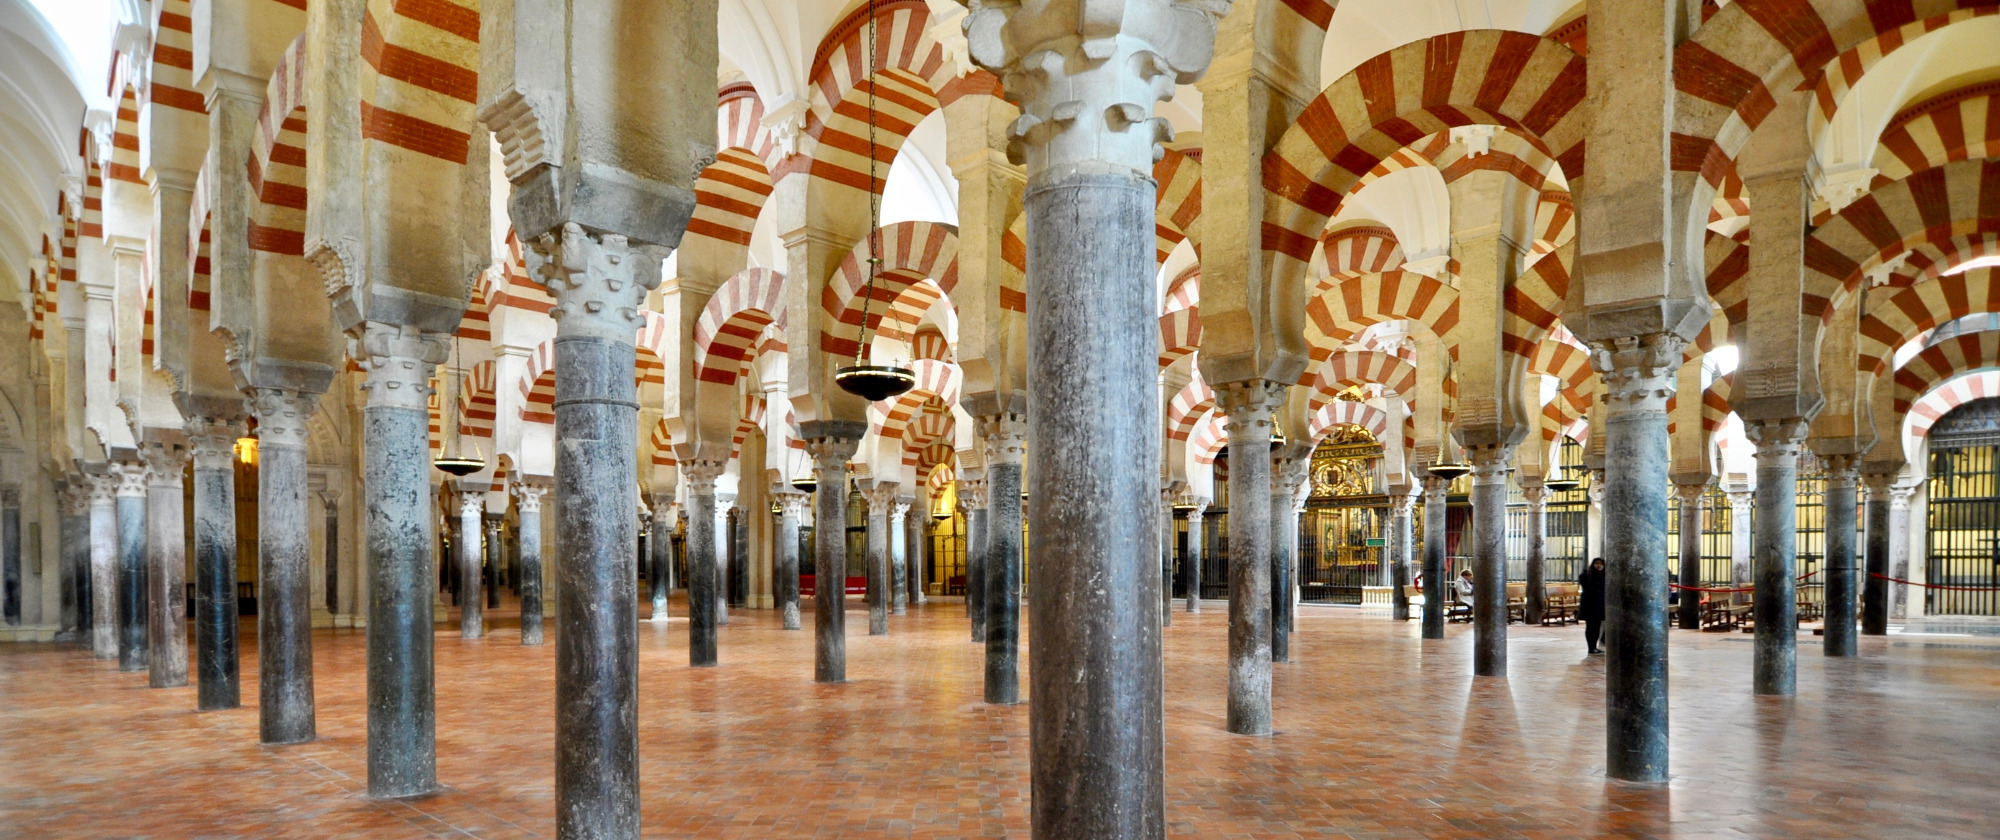 Córdoba 24 | Mezquita Catedral - Información, horario y tarifas